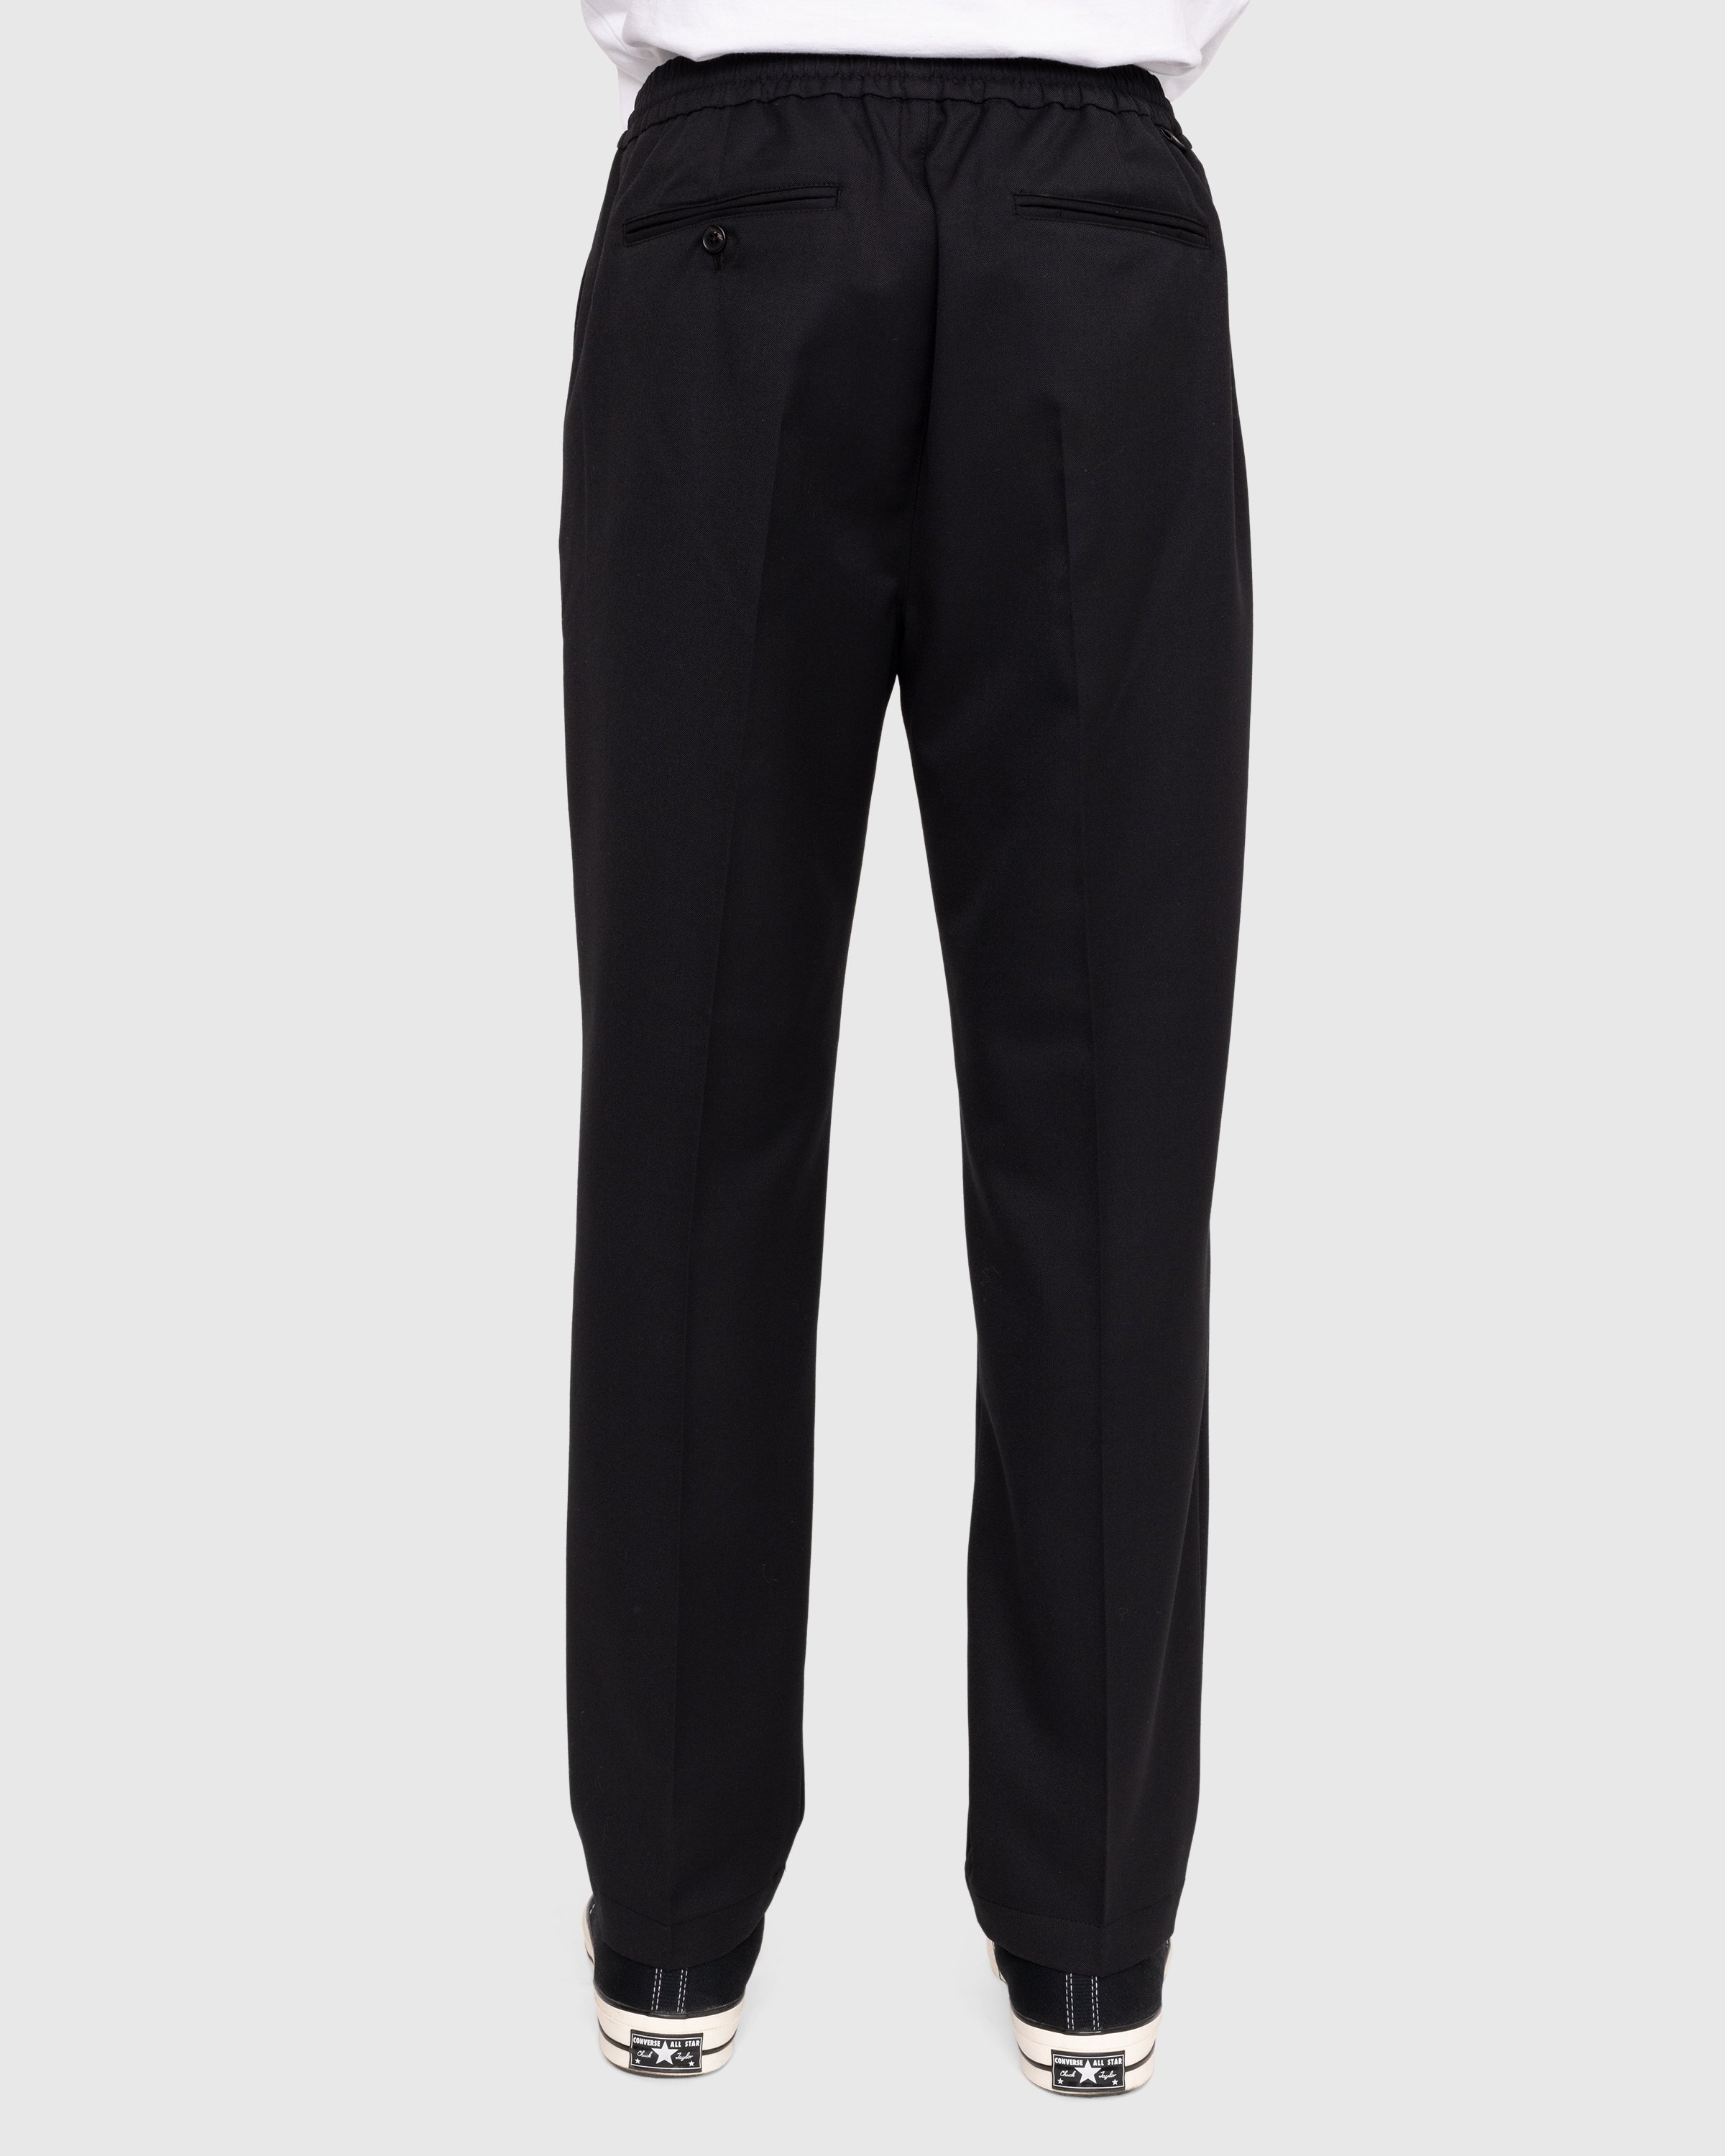 Highsnobiety – Wool Blend Elastic Pants Black - Trousers - Black - Image 4